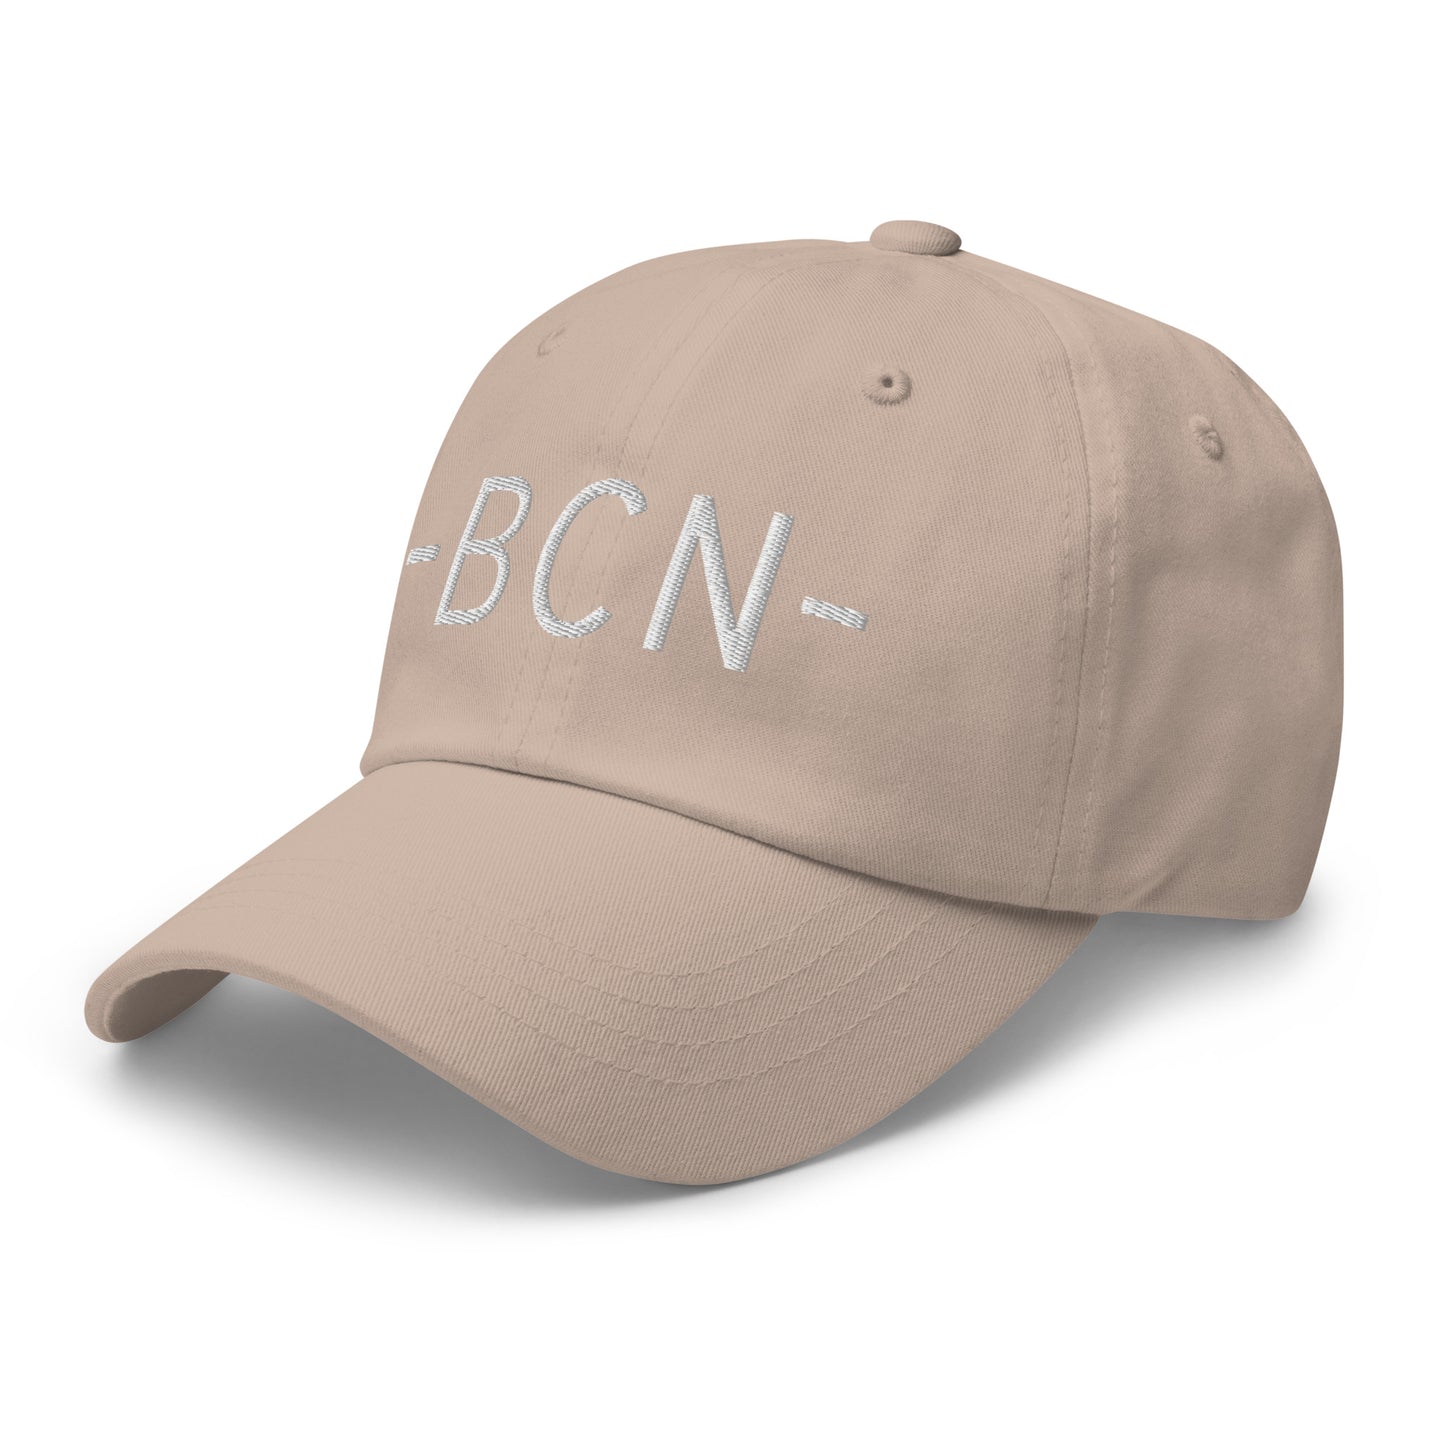 Souvenir Baseball Cap - White • BCN Barcelona • YHM Designs - Image 24